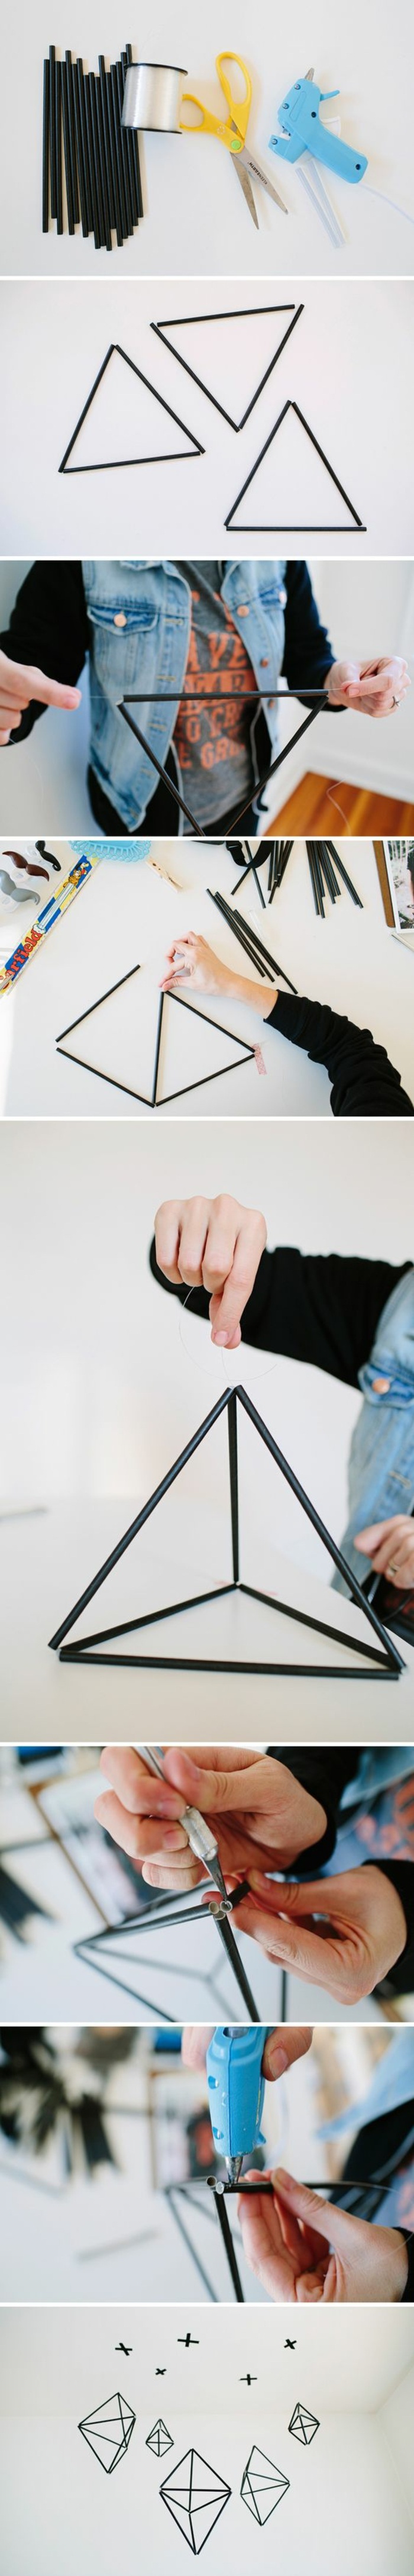 coole bastelideen - hängende geometrische figuren aus schwarzen röhren und angelleine